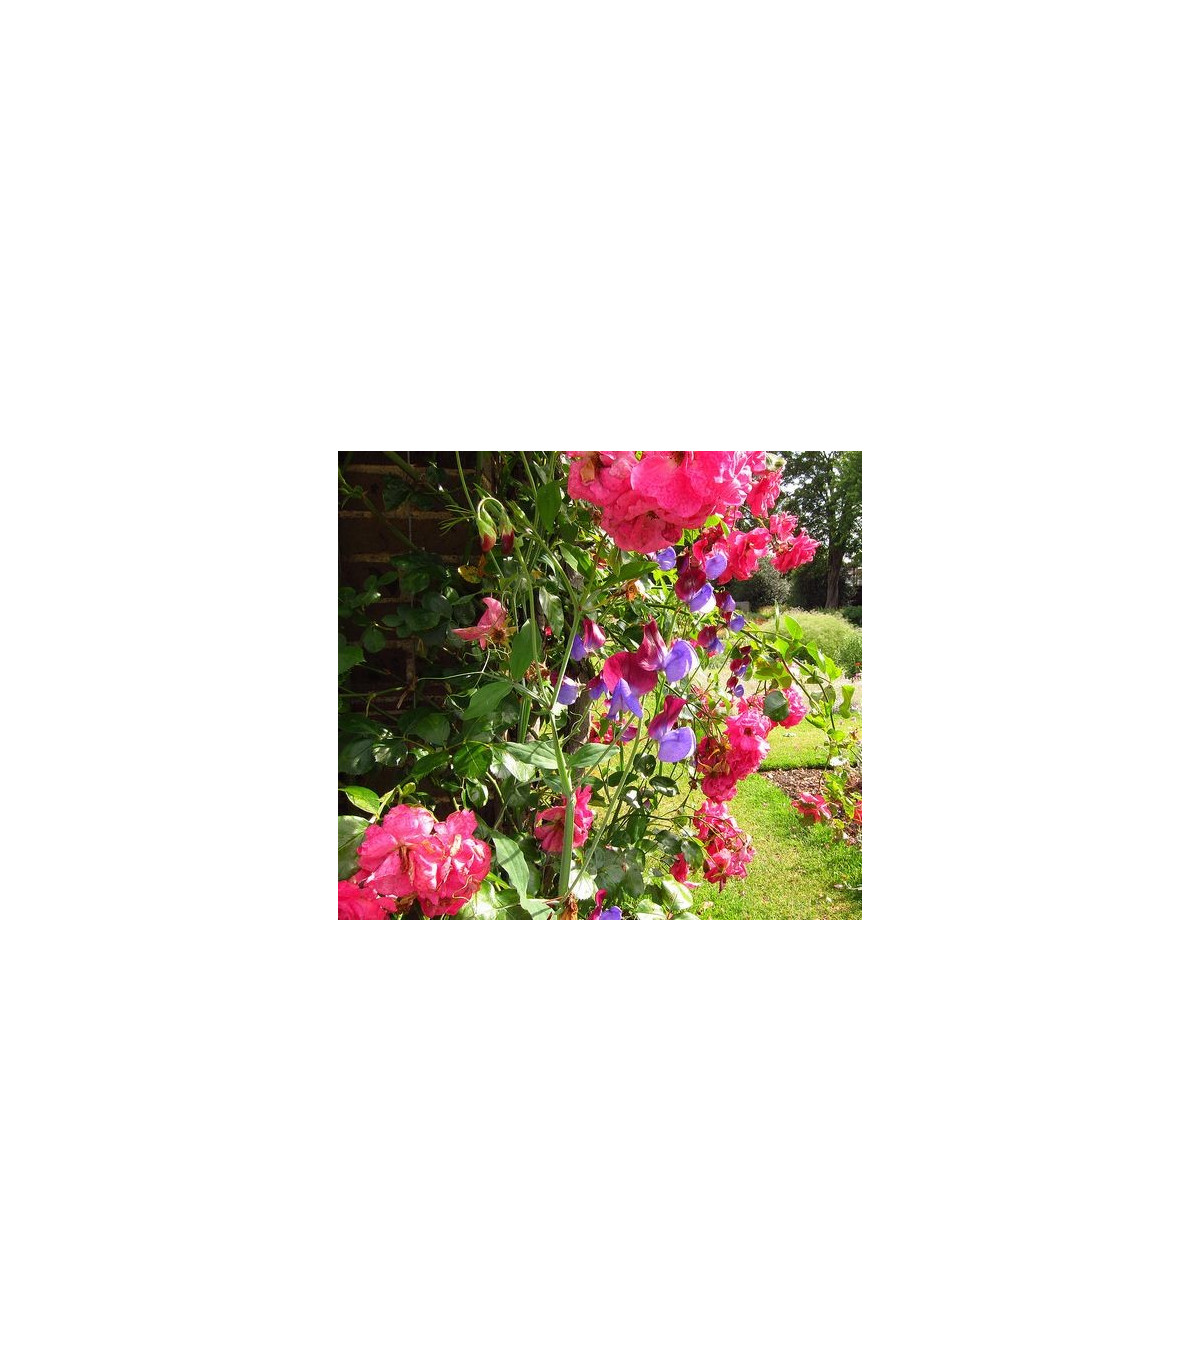 Hrachor voňavý ružový - Lathyrus odoratus - predaj semien - 20 ks